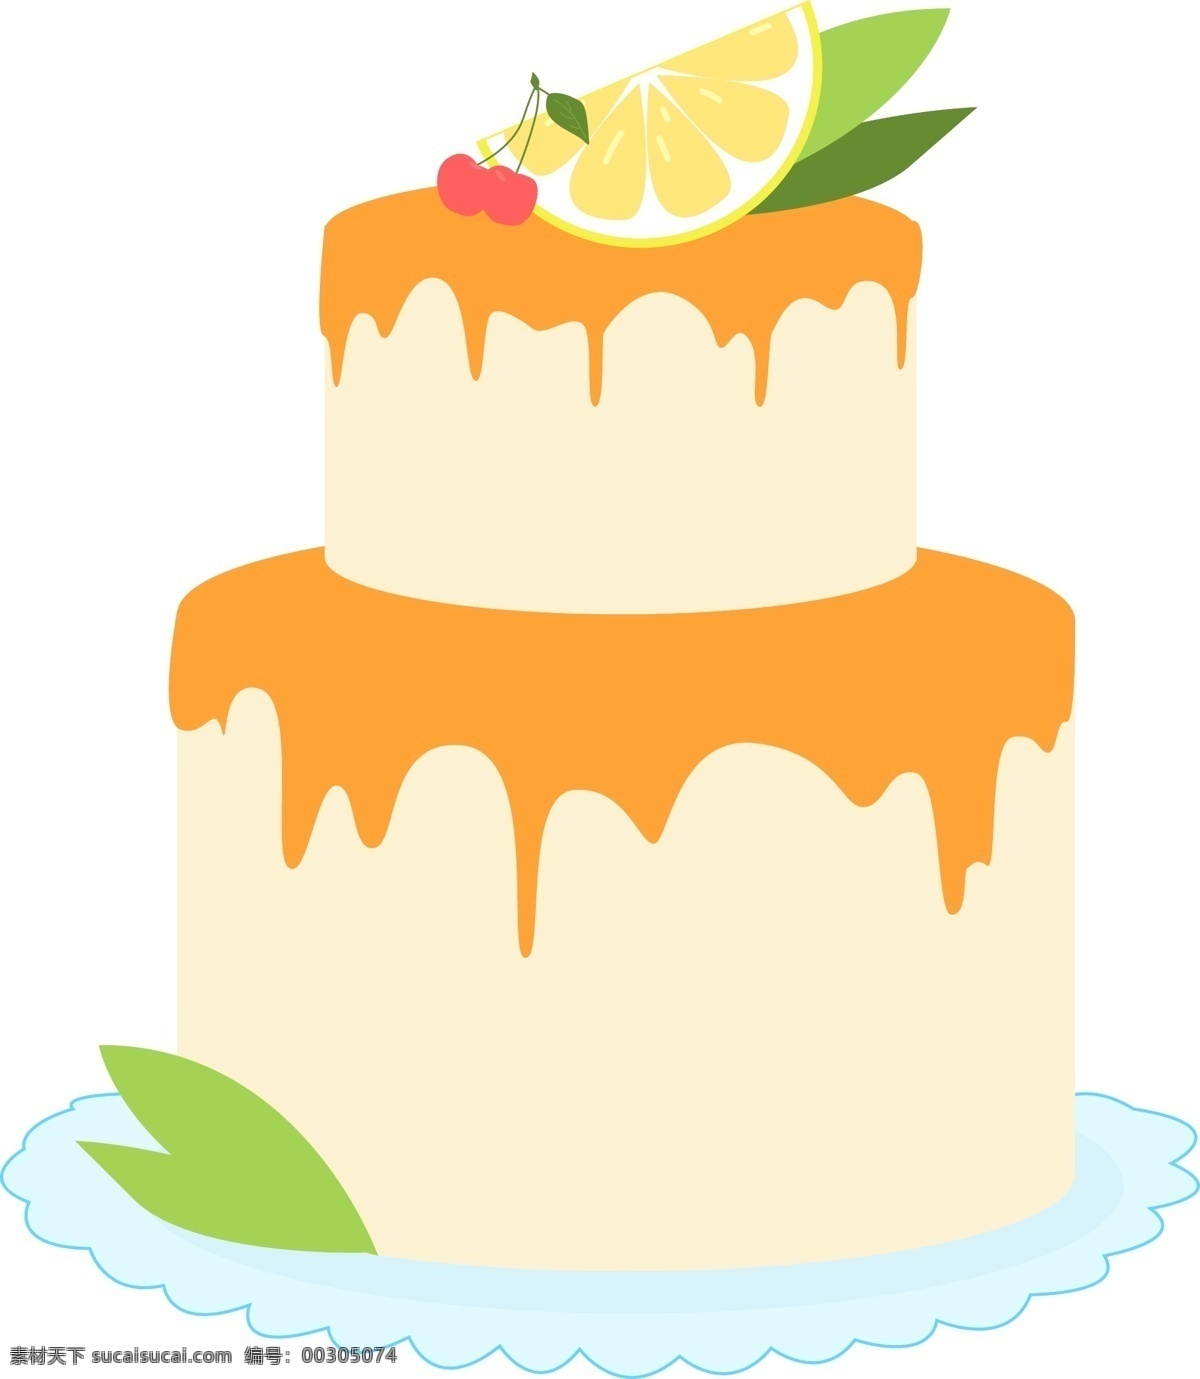 矢量 手绘 卡通 蛋糕 卡通生日蛋糕 杯子蛋糕 手绘生日蛋糕 蛋糕设计 蛋糕贺卡 儿童生日蛋糕 卡通蛋糕 甜品